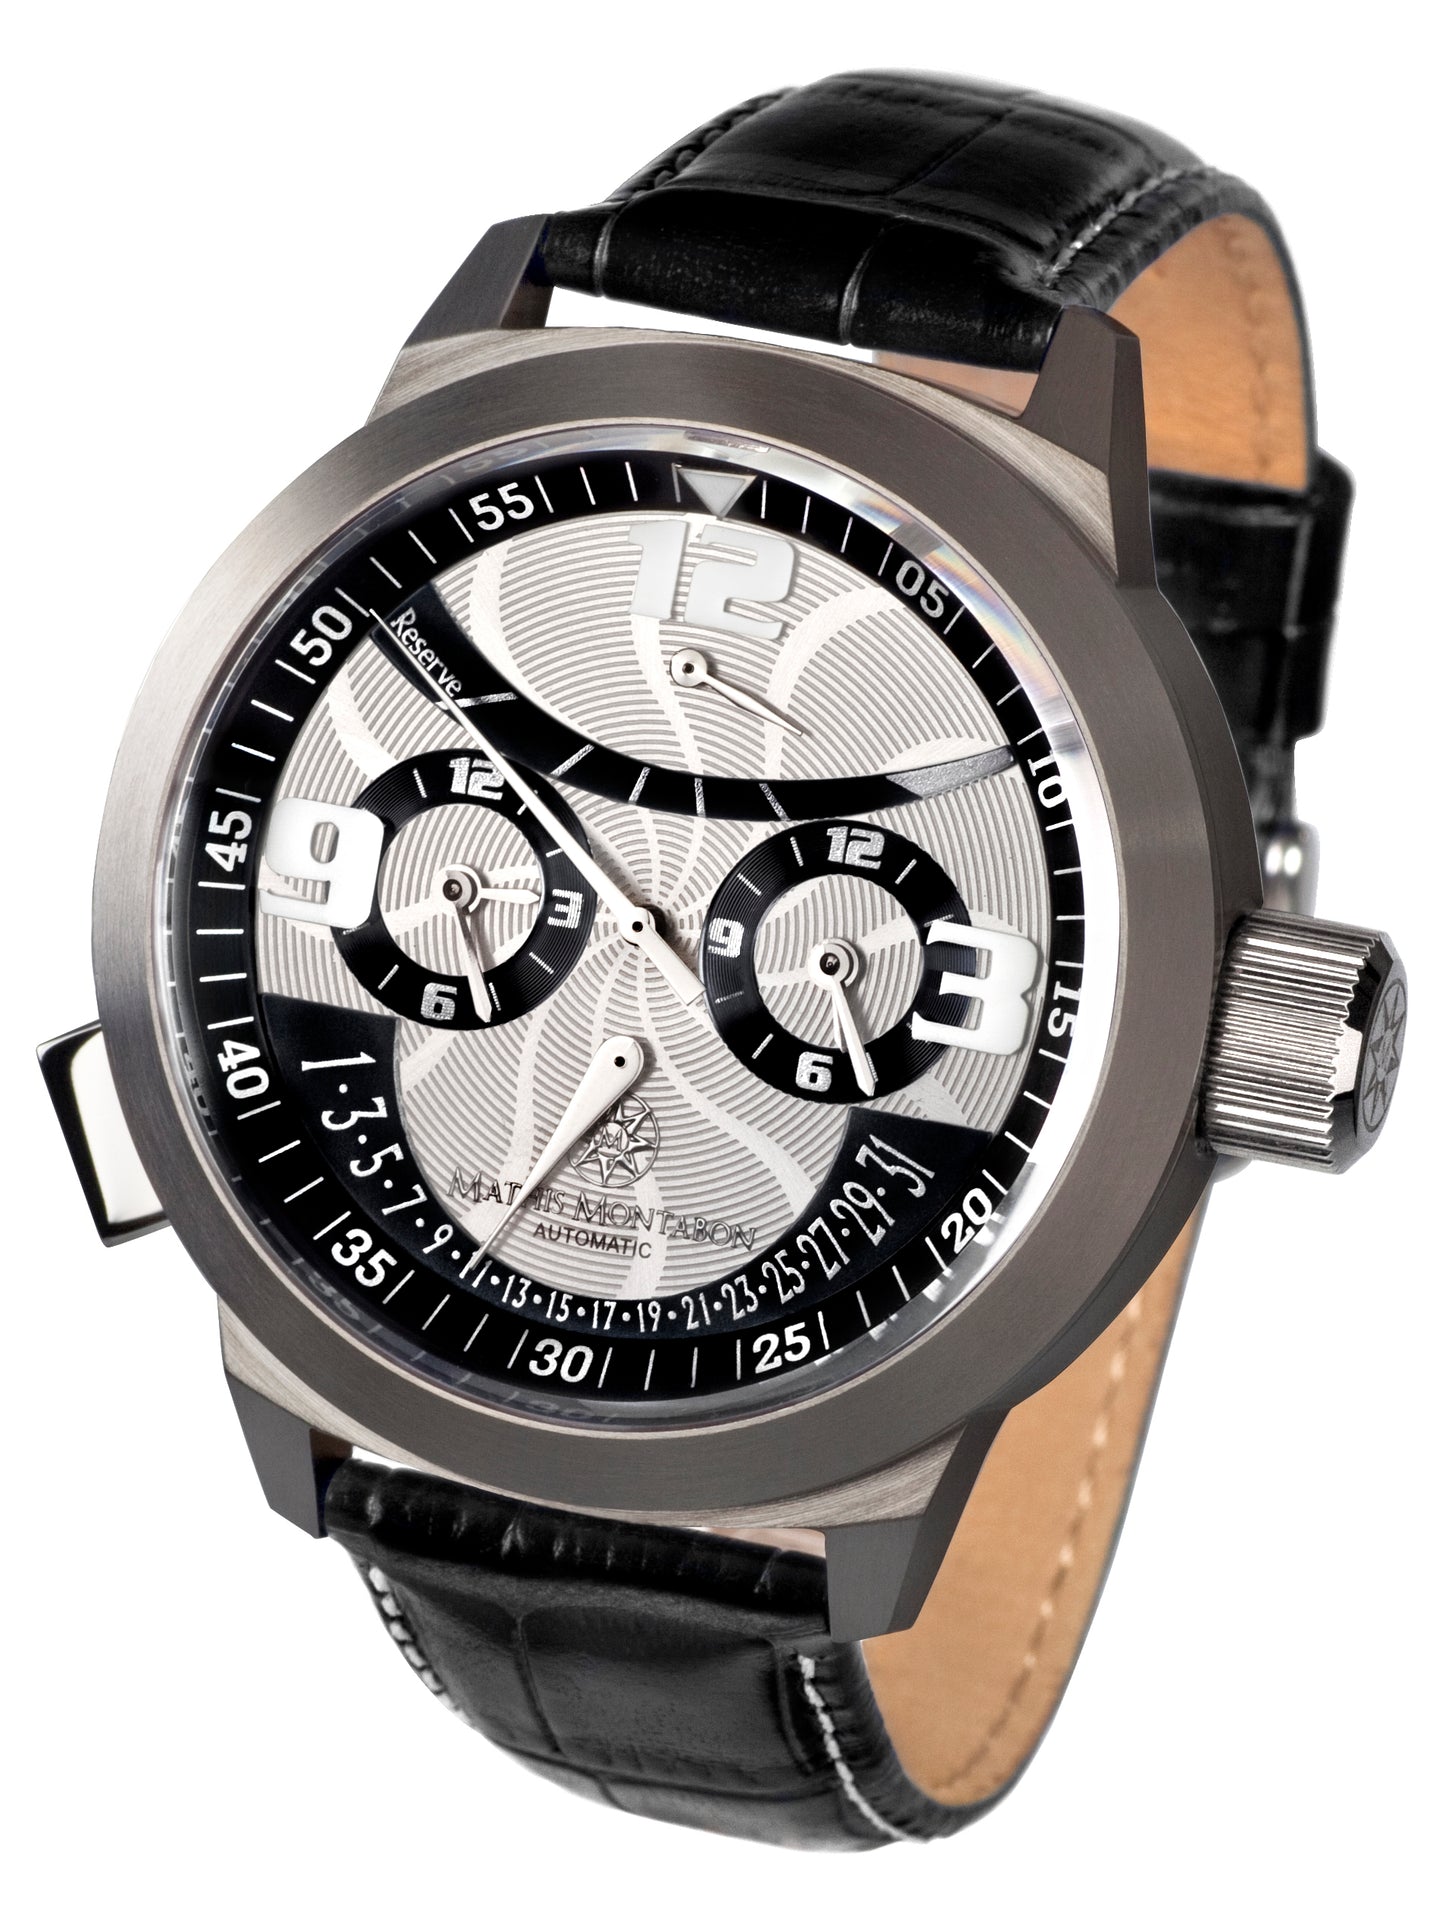 Automatic watches — Réserve de Marche — Mathis Montabon — silber